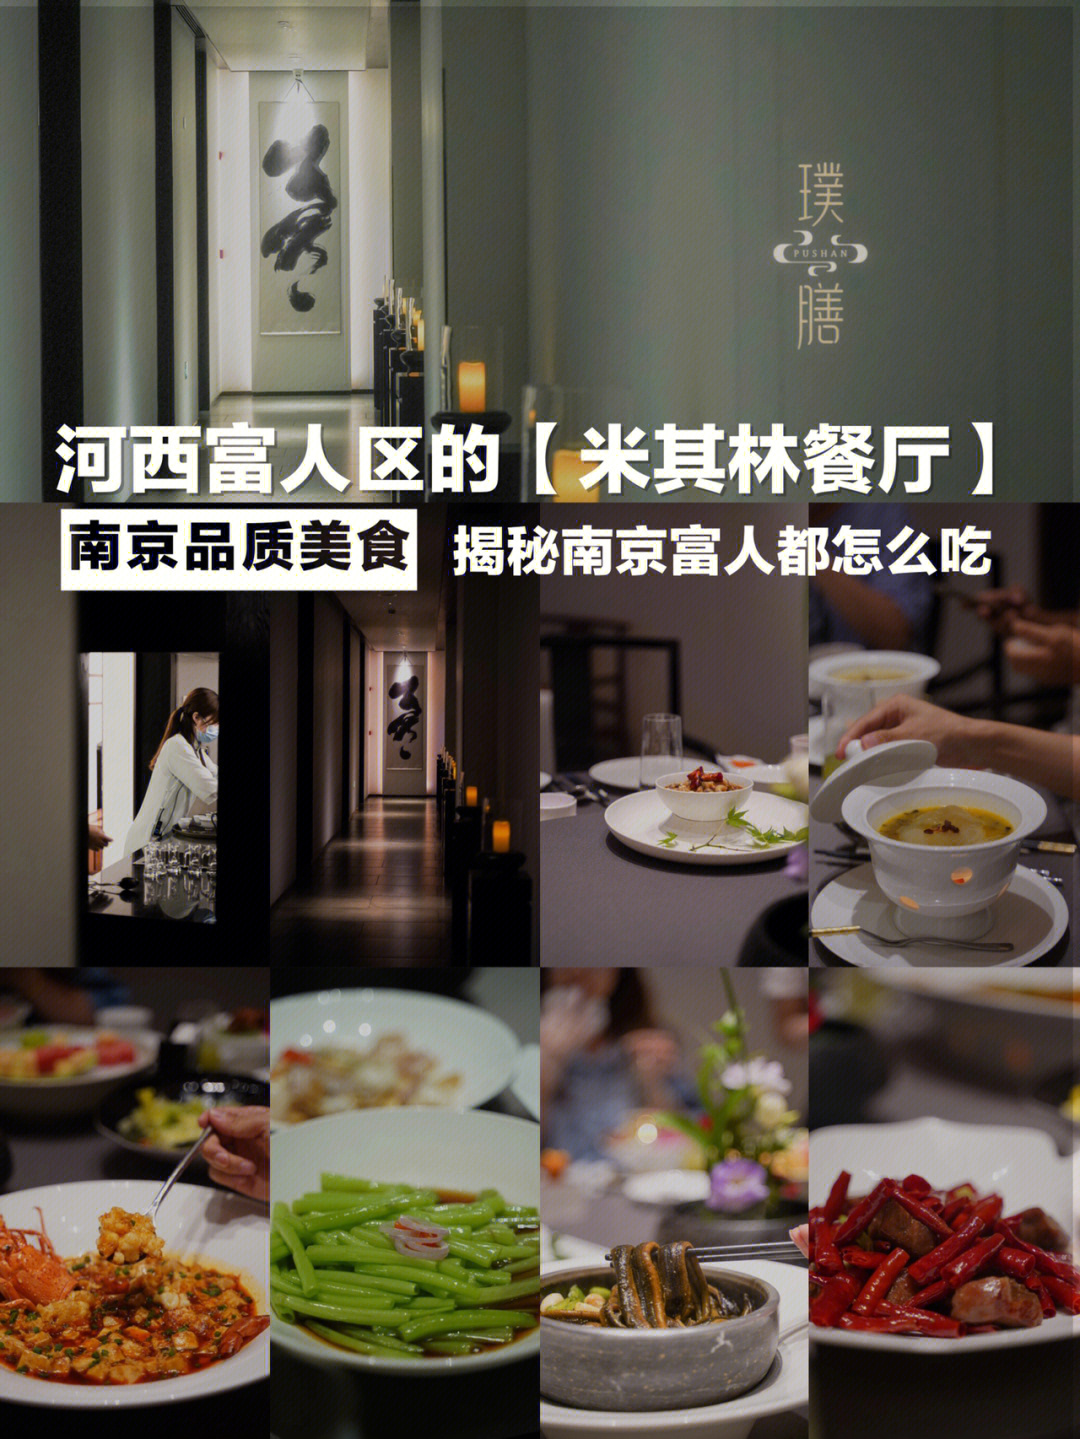 米其林餐厅 南京图片